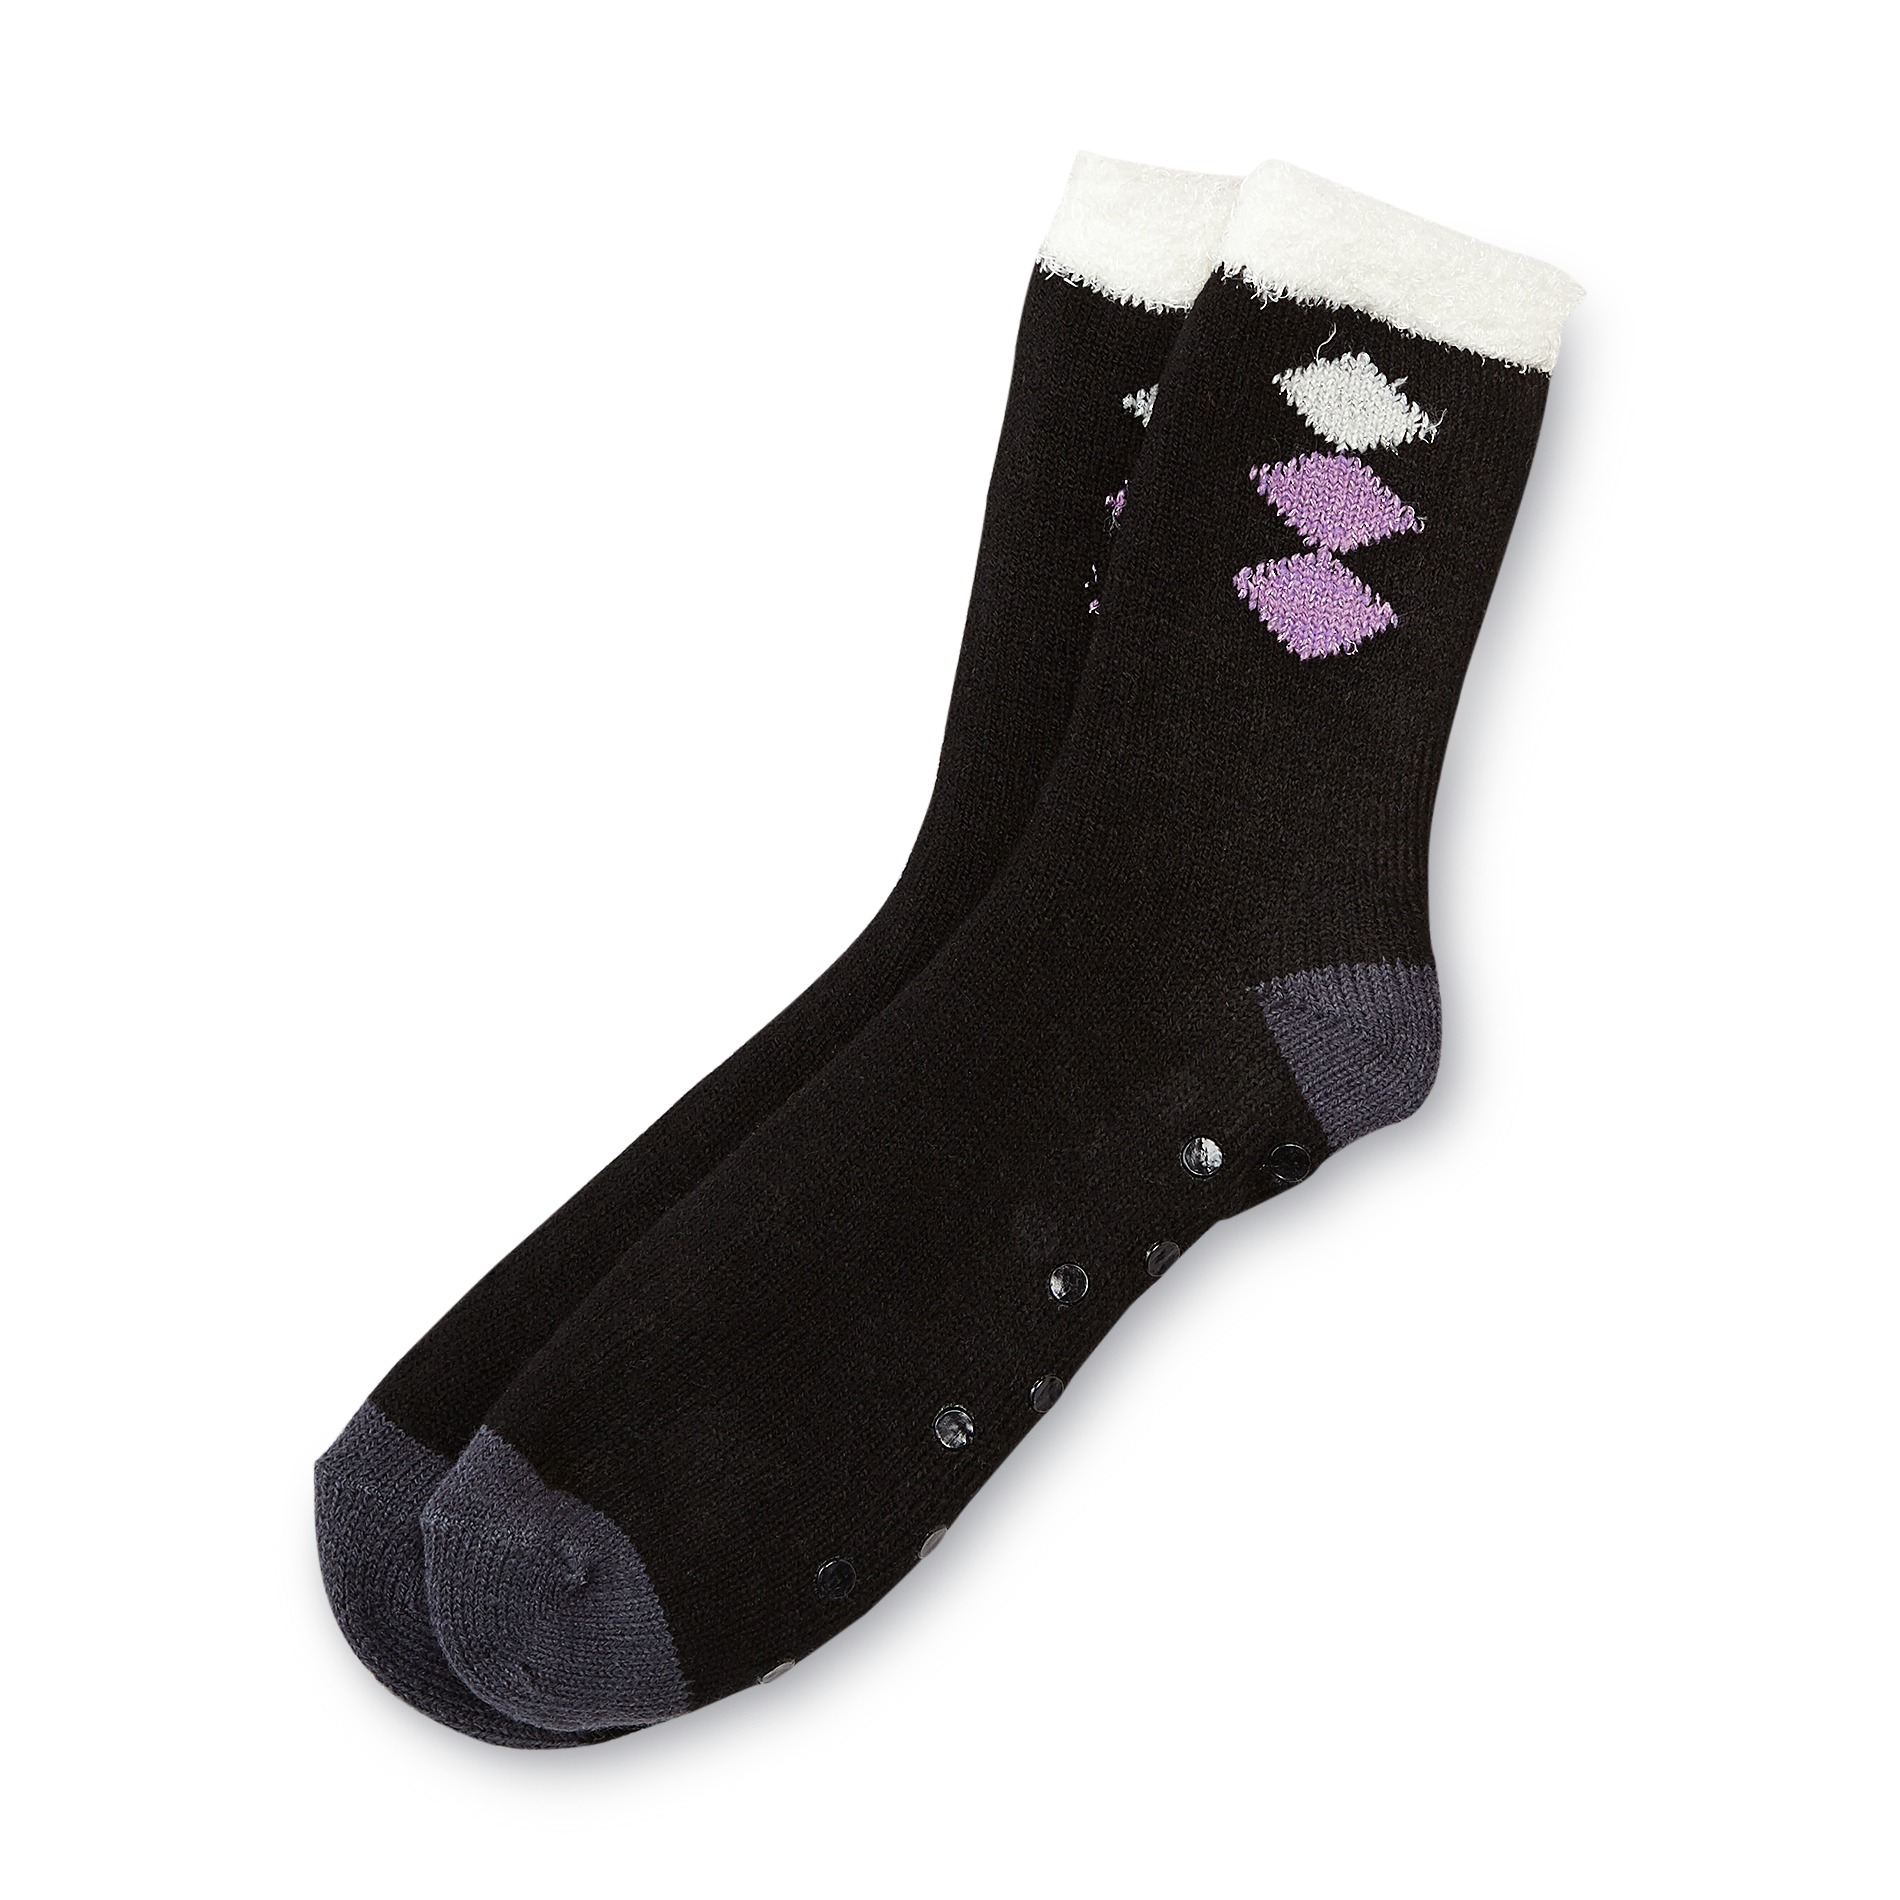 Studio S Women's Slipper Socks - Argyle